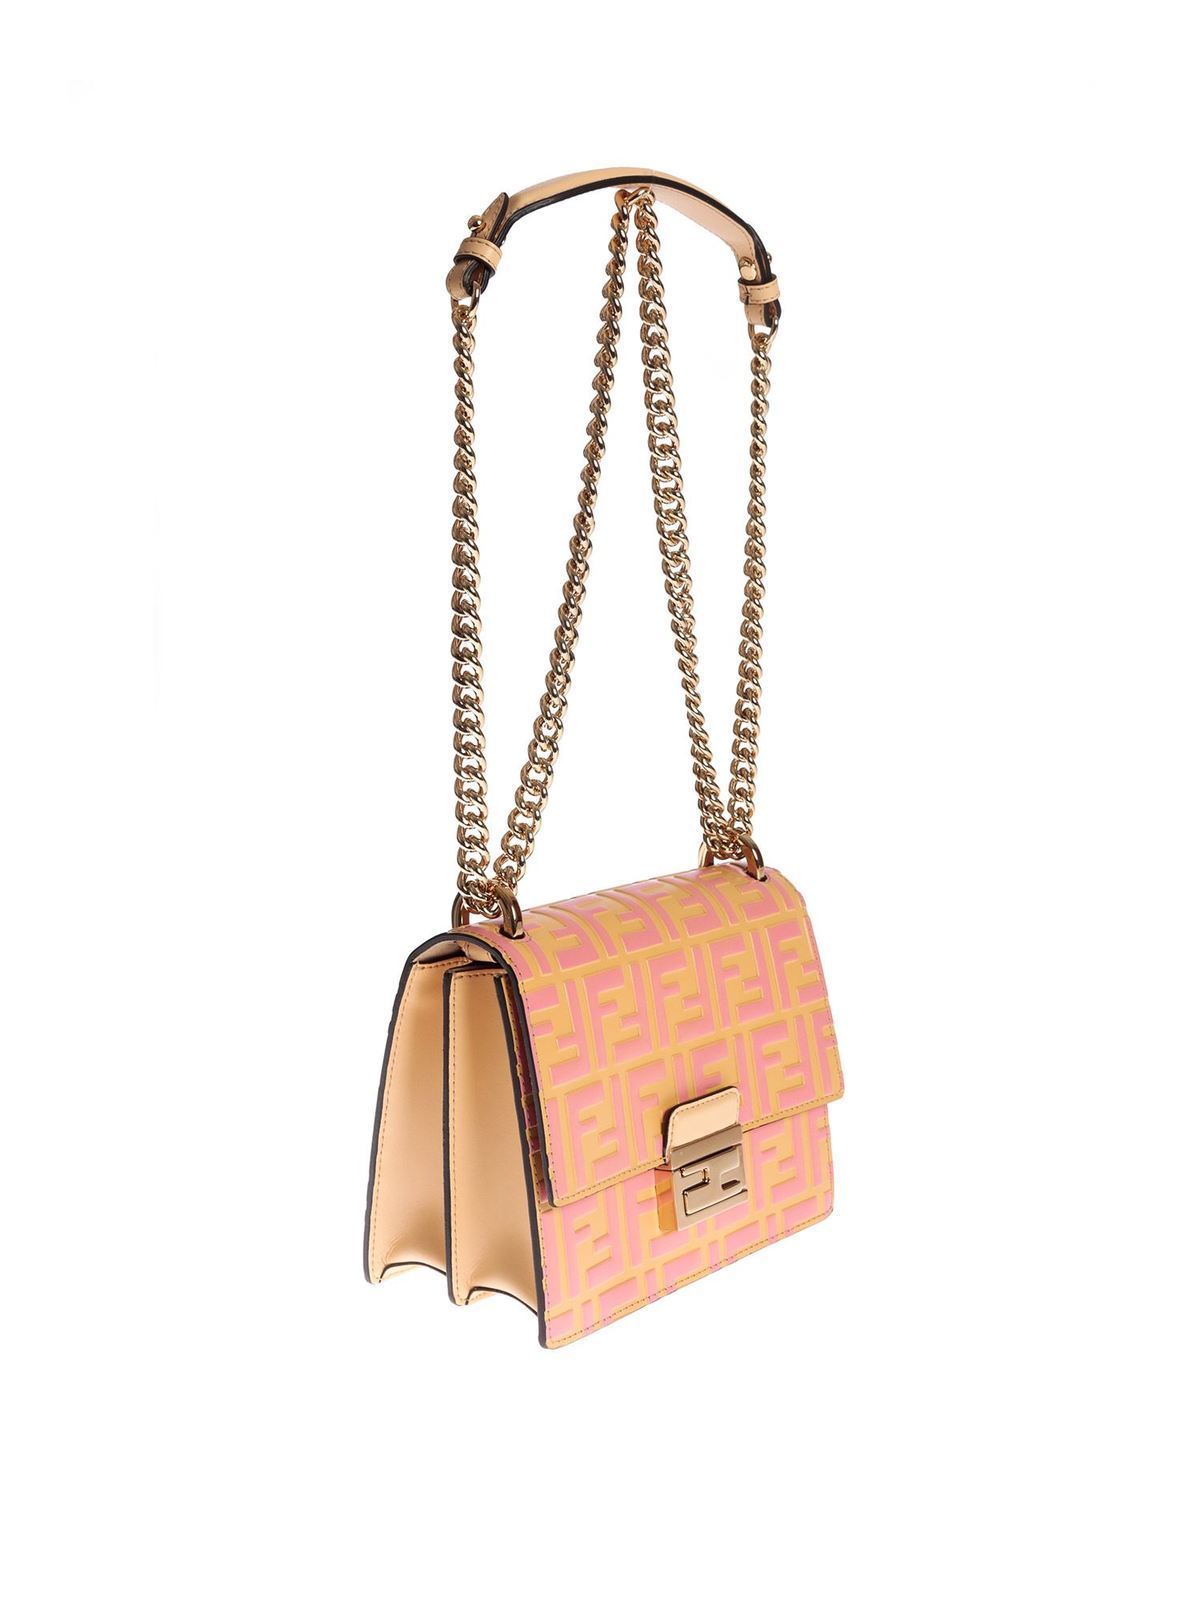 Fendi Fuchsia Pink Leather Gold Strap Baguette Handbag Shoulder Bag Purse  NEW | eBay